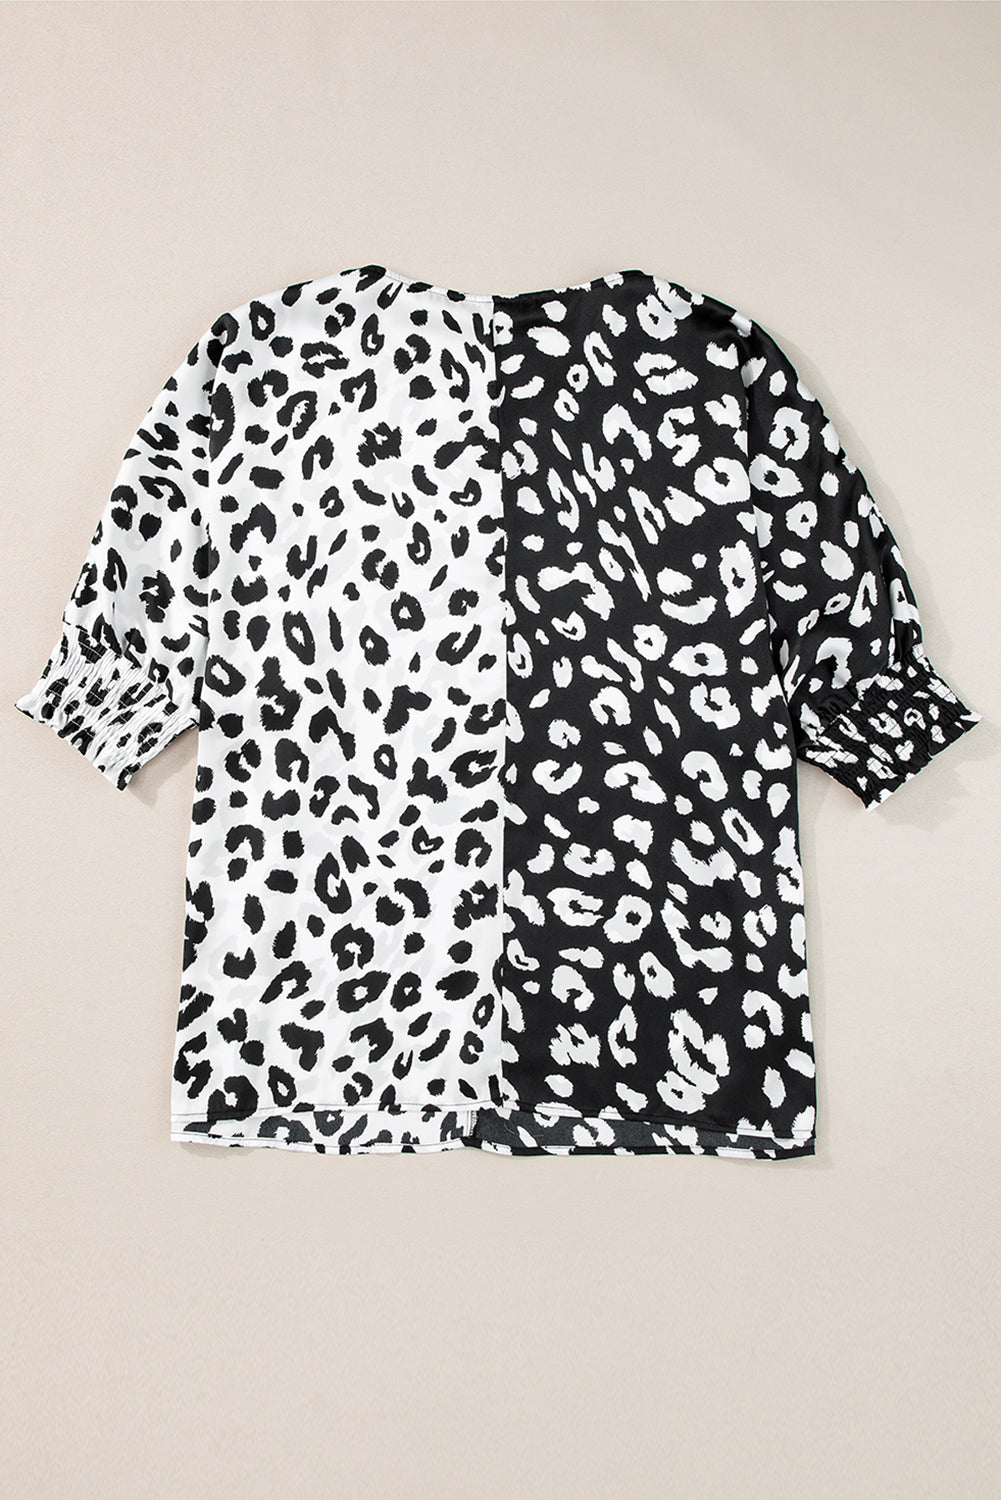 Crna bluza do pola rukava s leopard kontrastom veće veličine